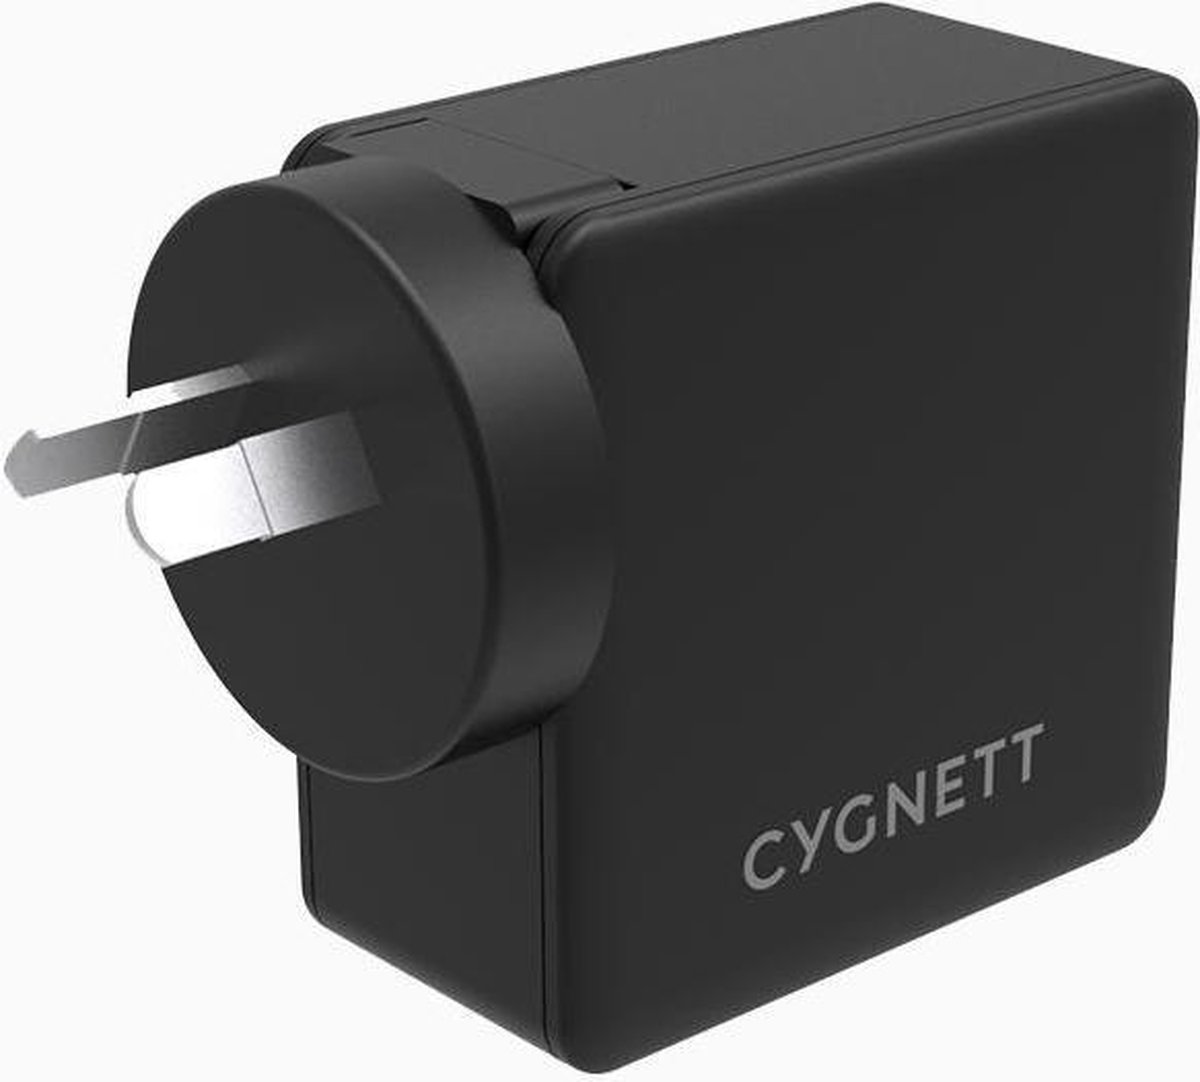 Cygnett Cygnett CY2411PDWCH USB-oplader Thuis 2 x USB-C bus, USB 2.0 bus A